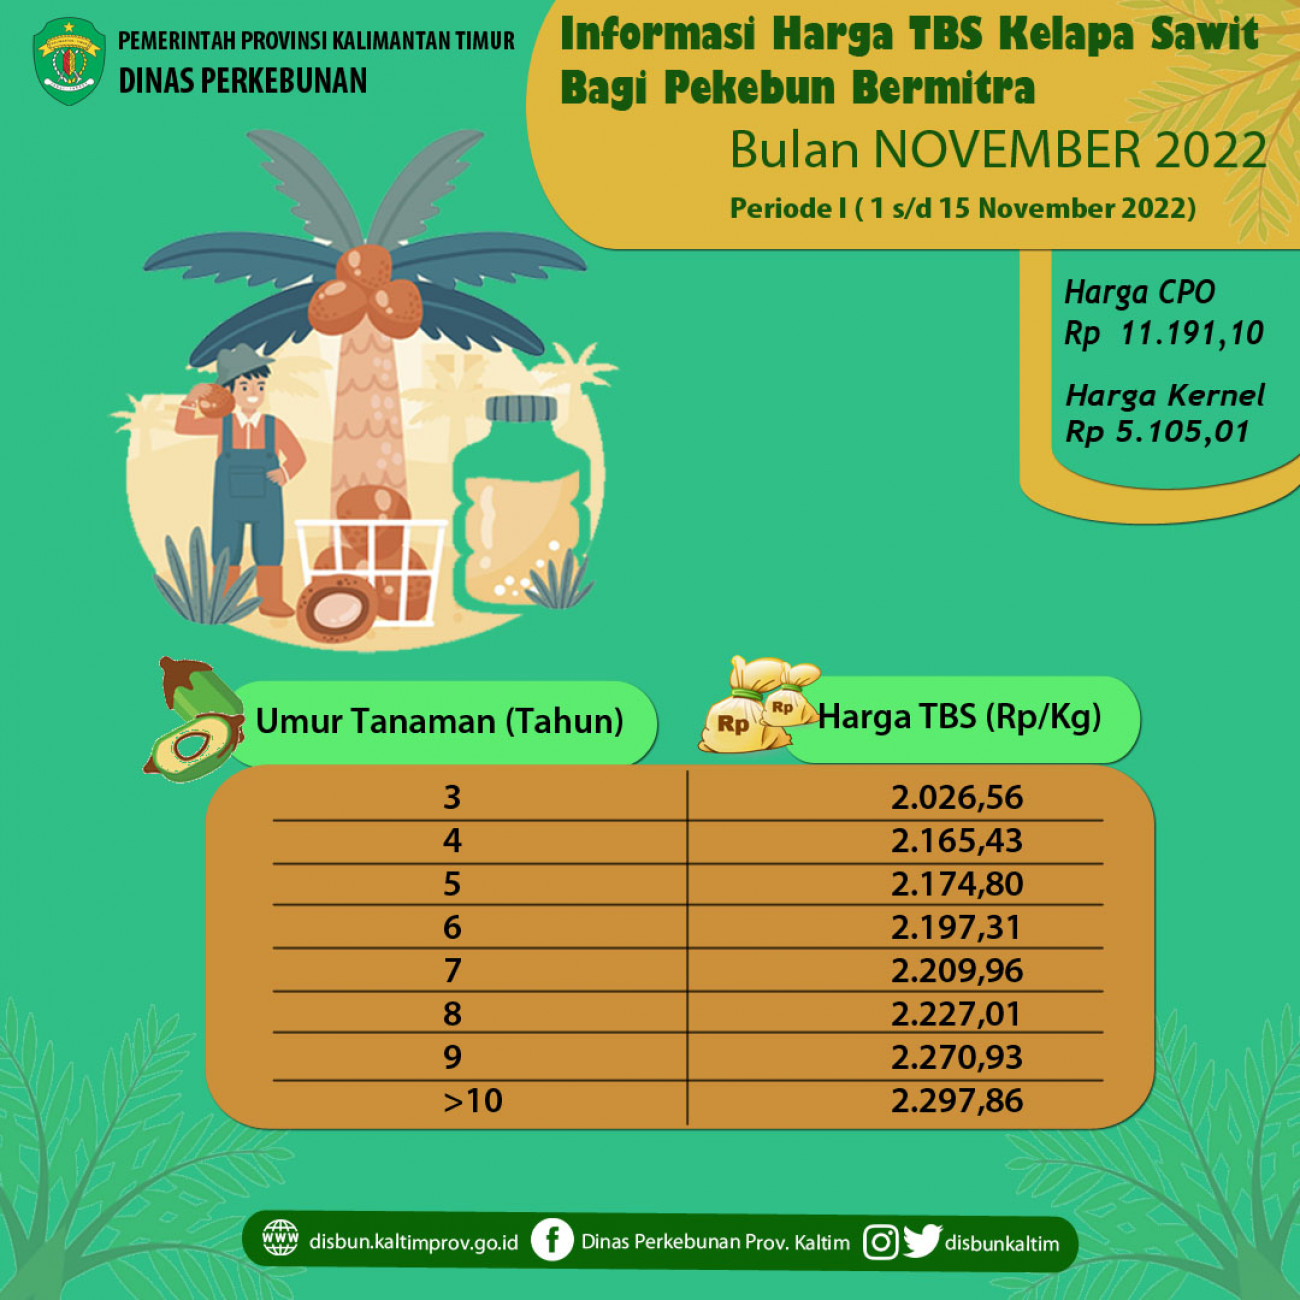 Informasi Harga TBS Kelapa Sawit Bagi Pekebun Bermitra Periode 1 - 15 November 2022